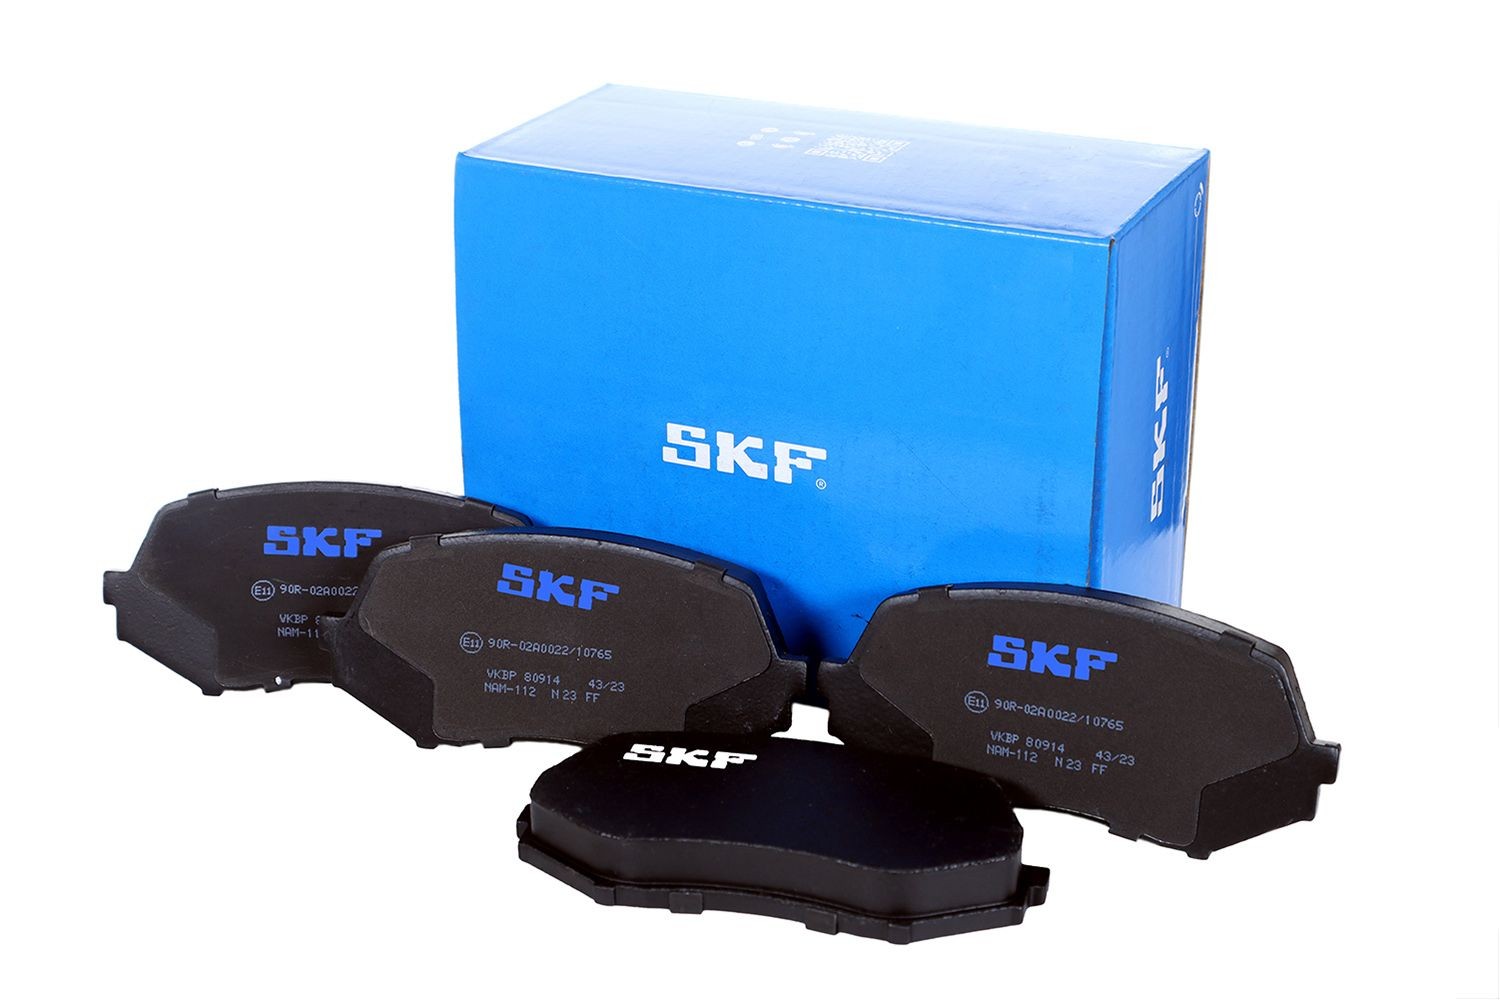 VKBP 80914 SKF Bremsbeläge für BMC online bestellen